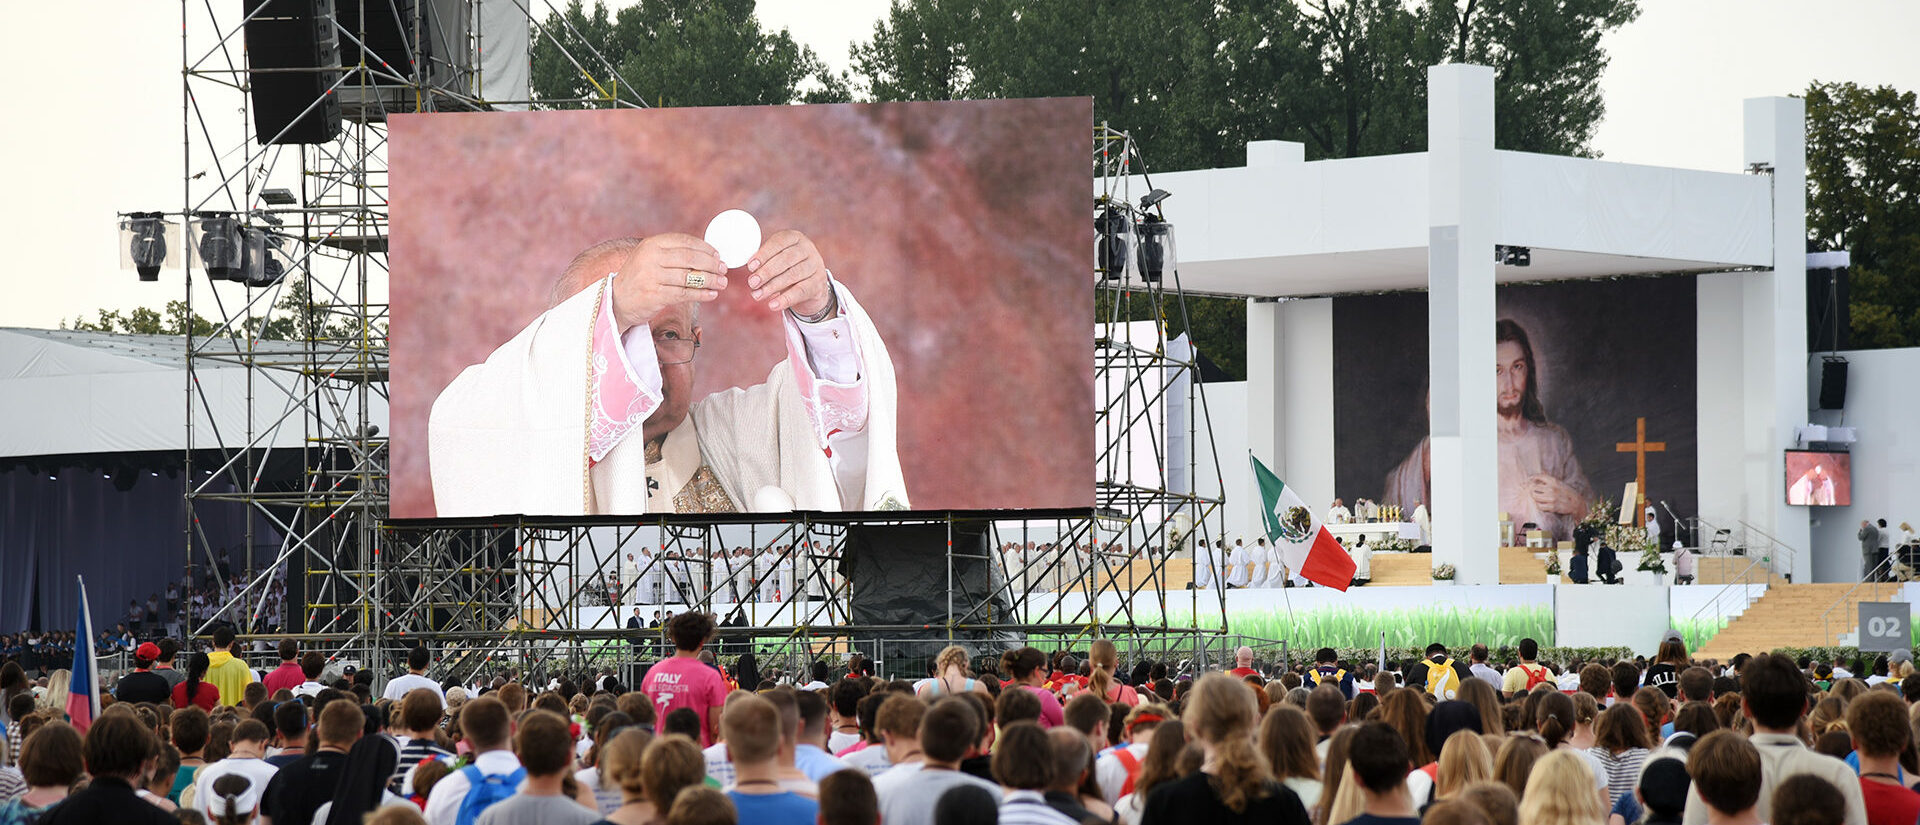 Le cardinal Dziwisz est visé par des accusations de dissimulation d'abus sexuels | © Pierre Pistoletti